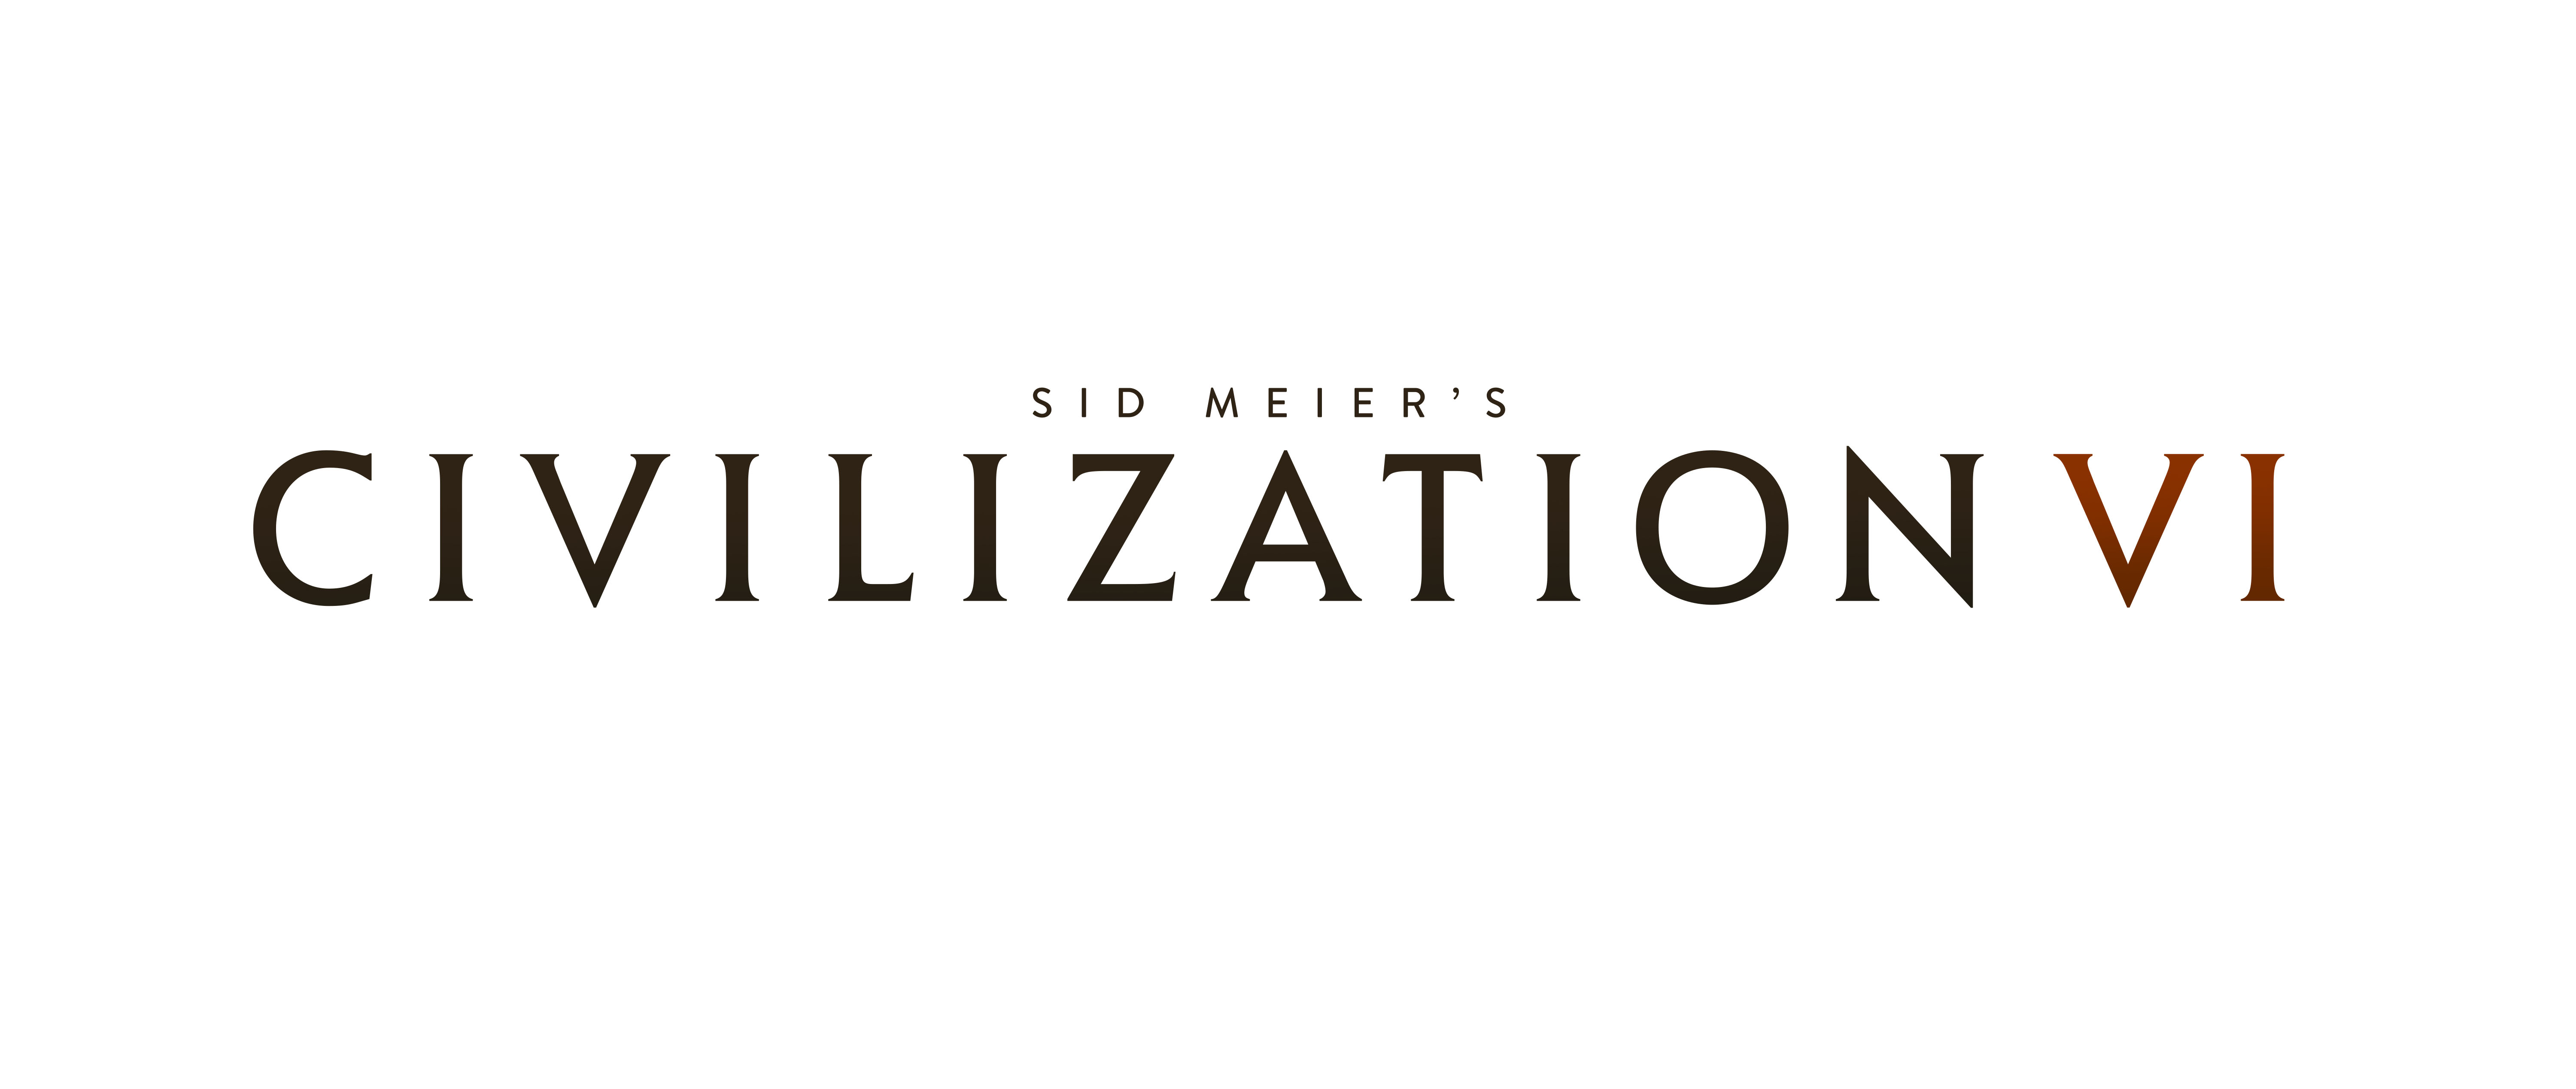 Civilization VI - Trailer di lancio